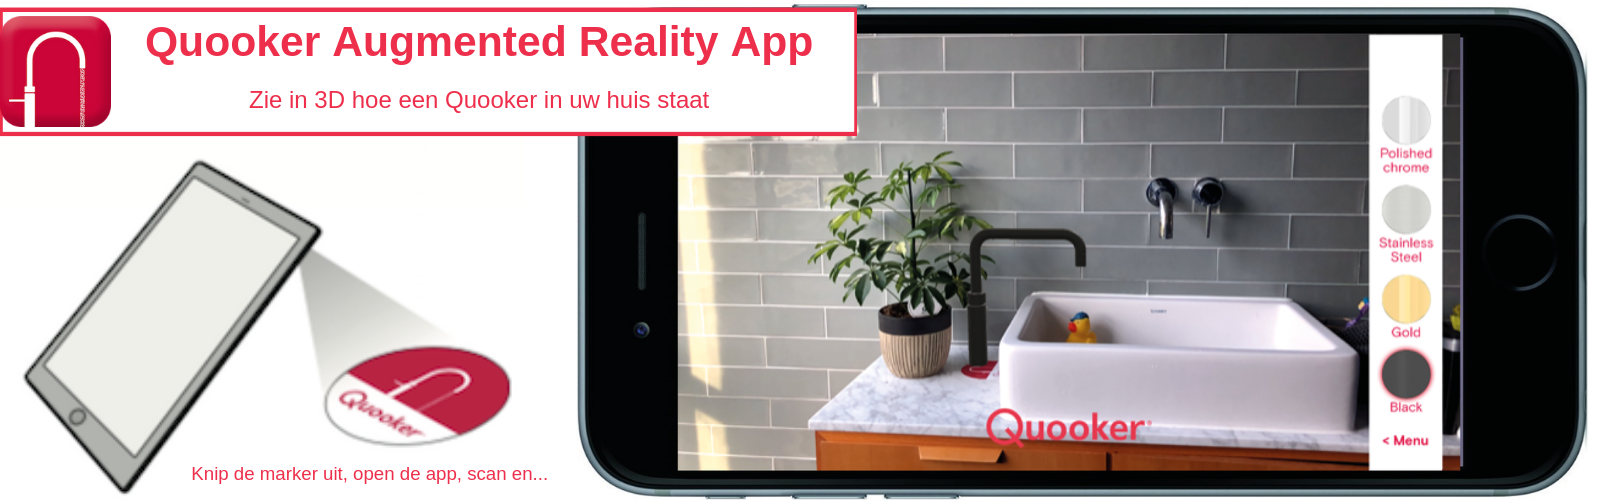 Download nu de Quooker Augmented Reality app